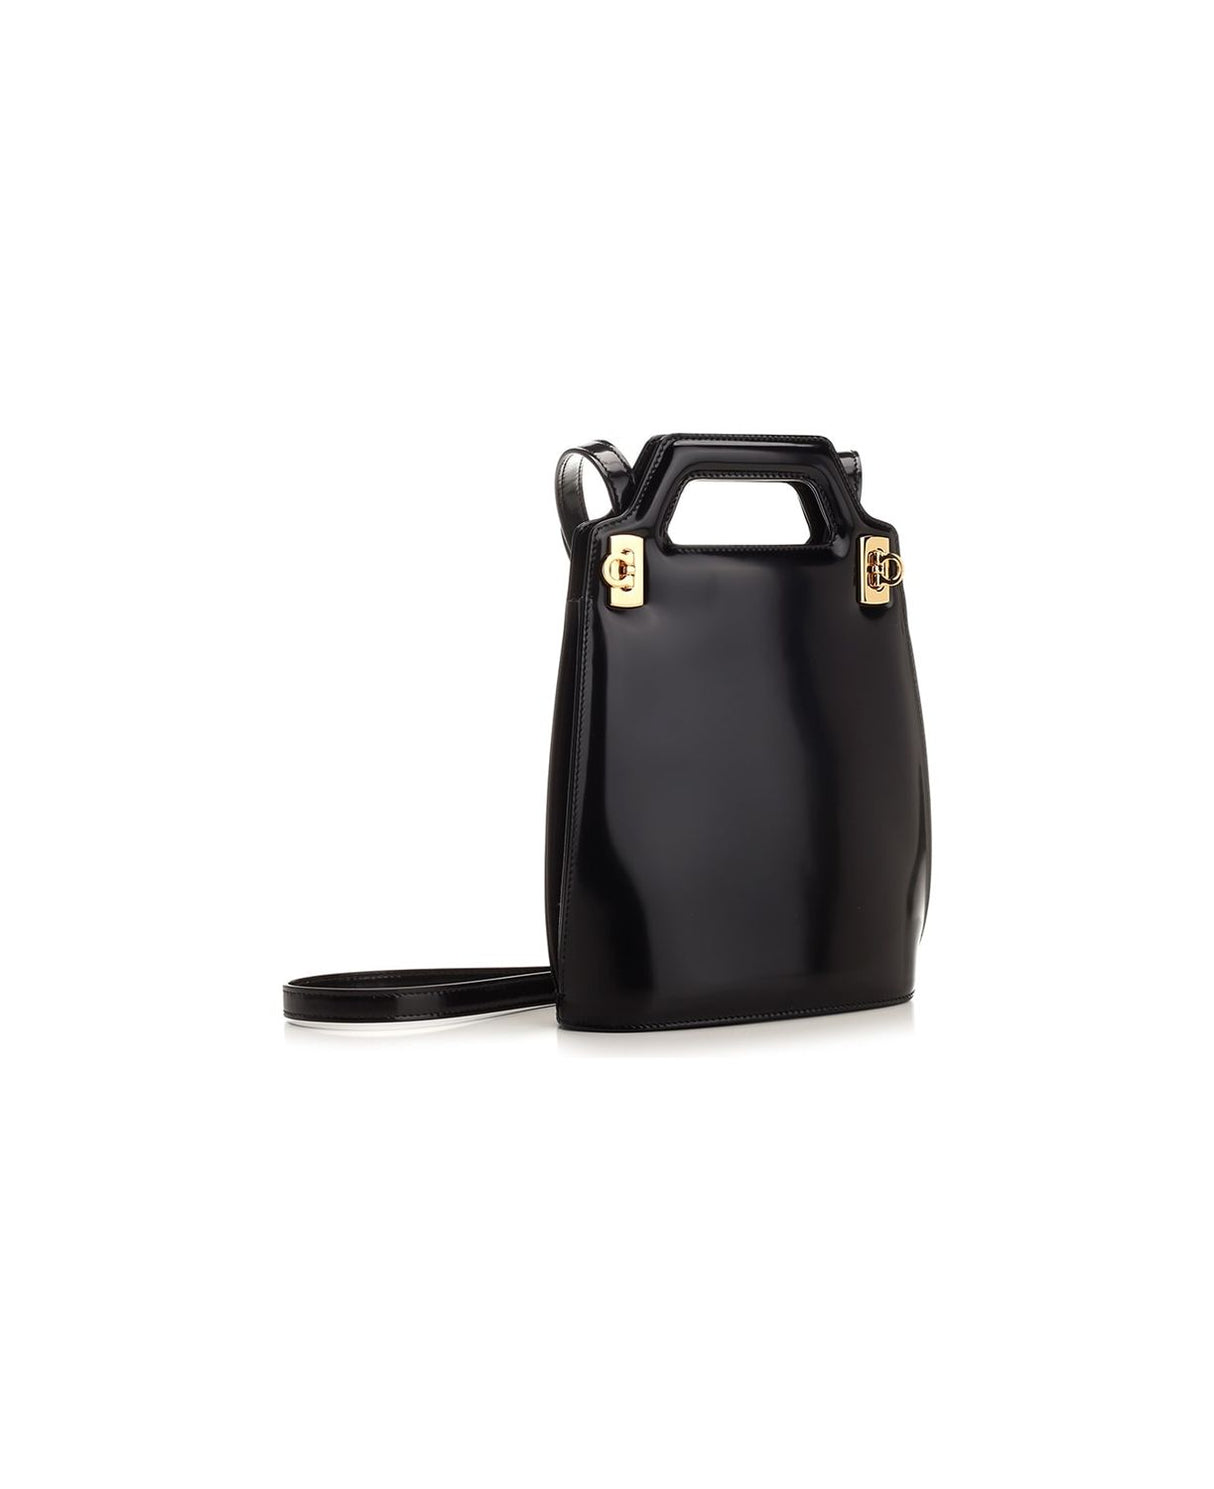 Túi đeo vai nhỏ màu đen thời trang dành cho phụ nữ | Bộ sưu tập thời trang FW23